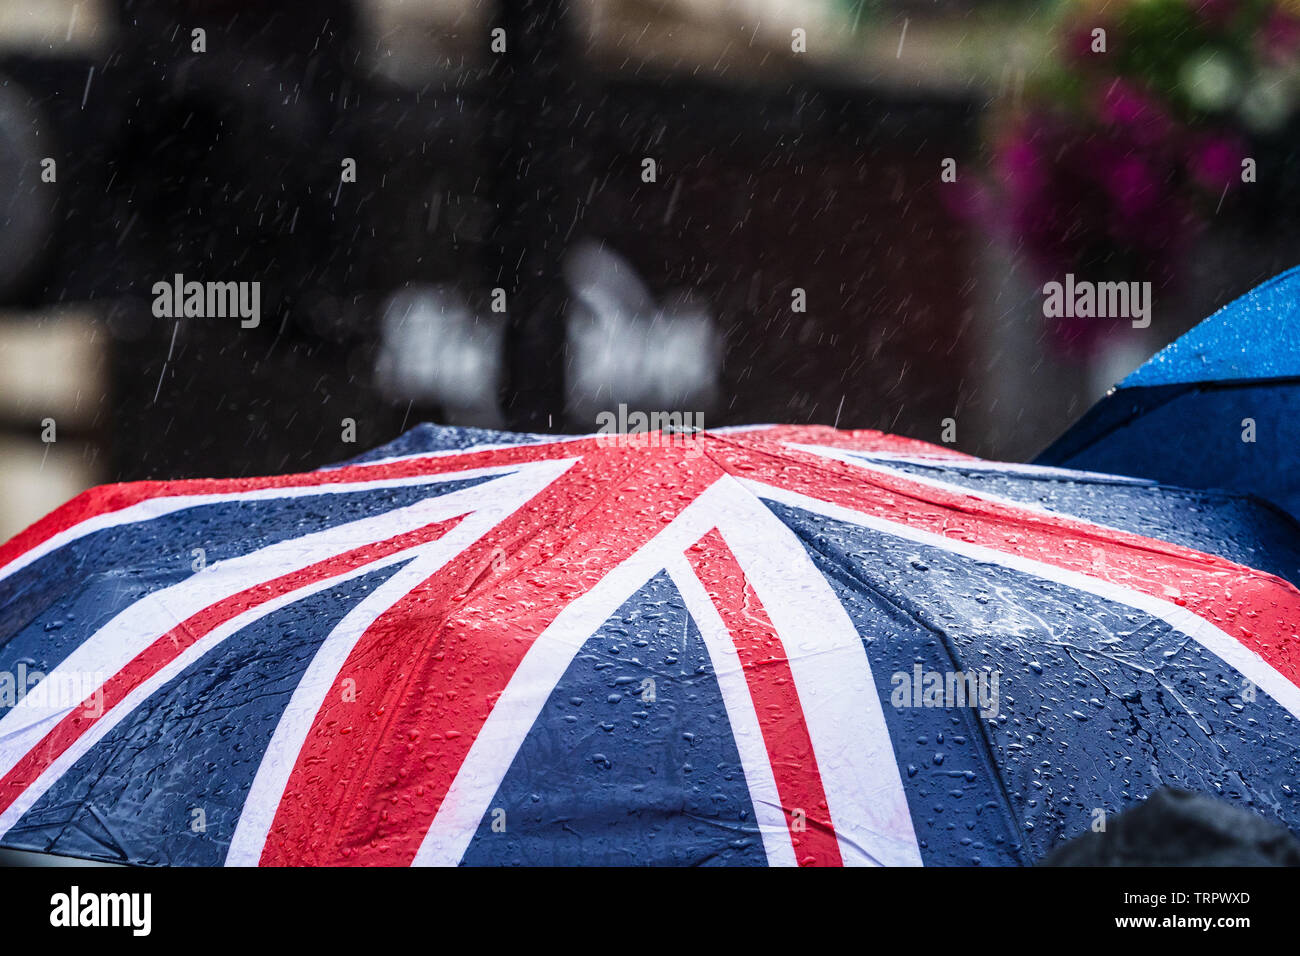 Union Jack Umbrella in the rain in London Stock Photo